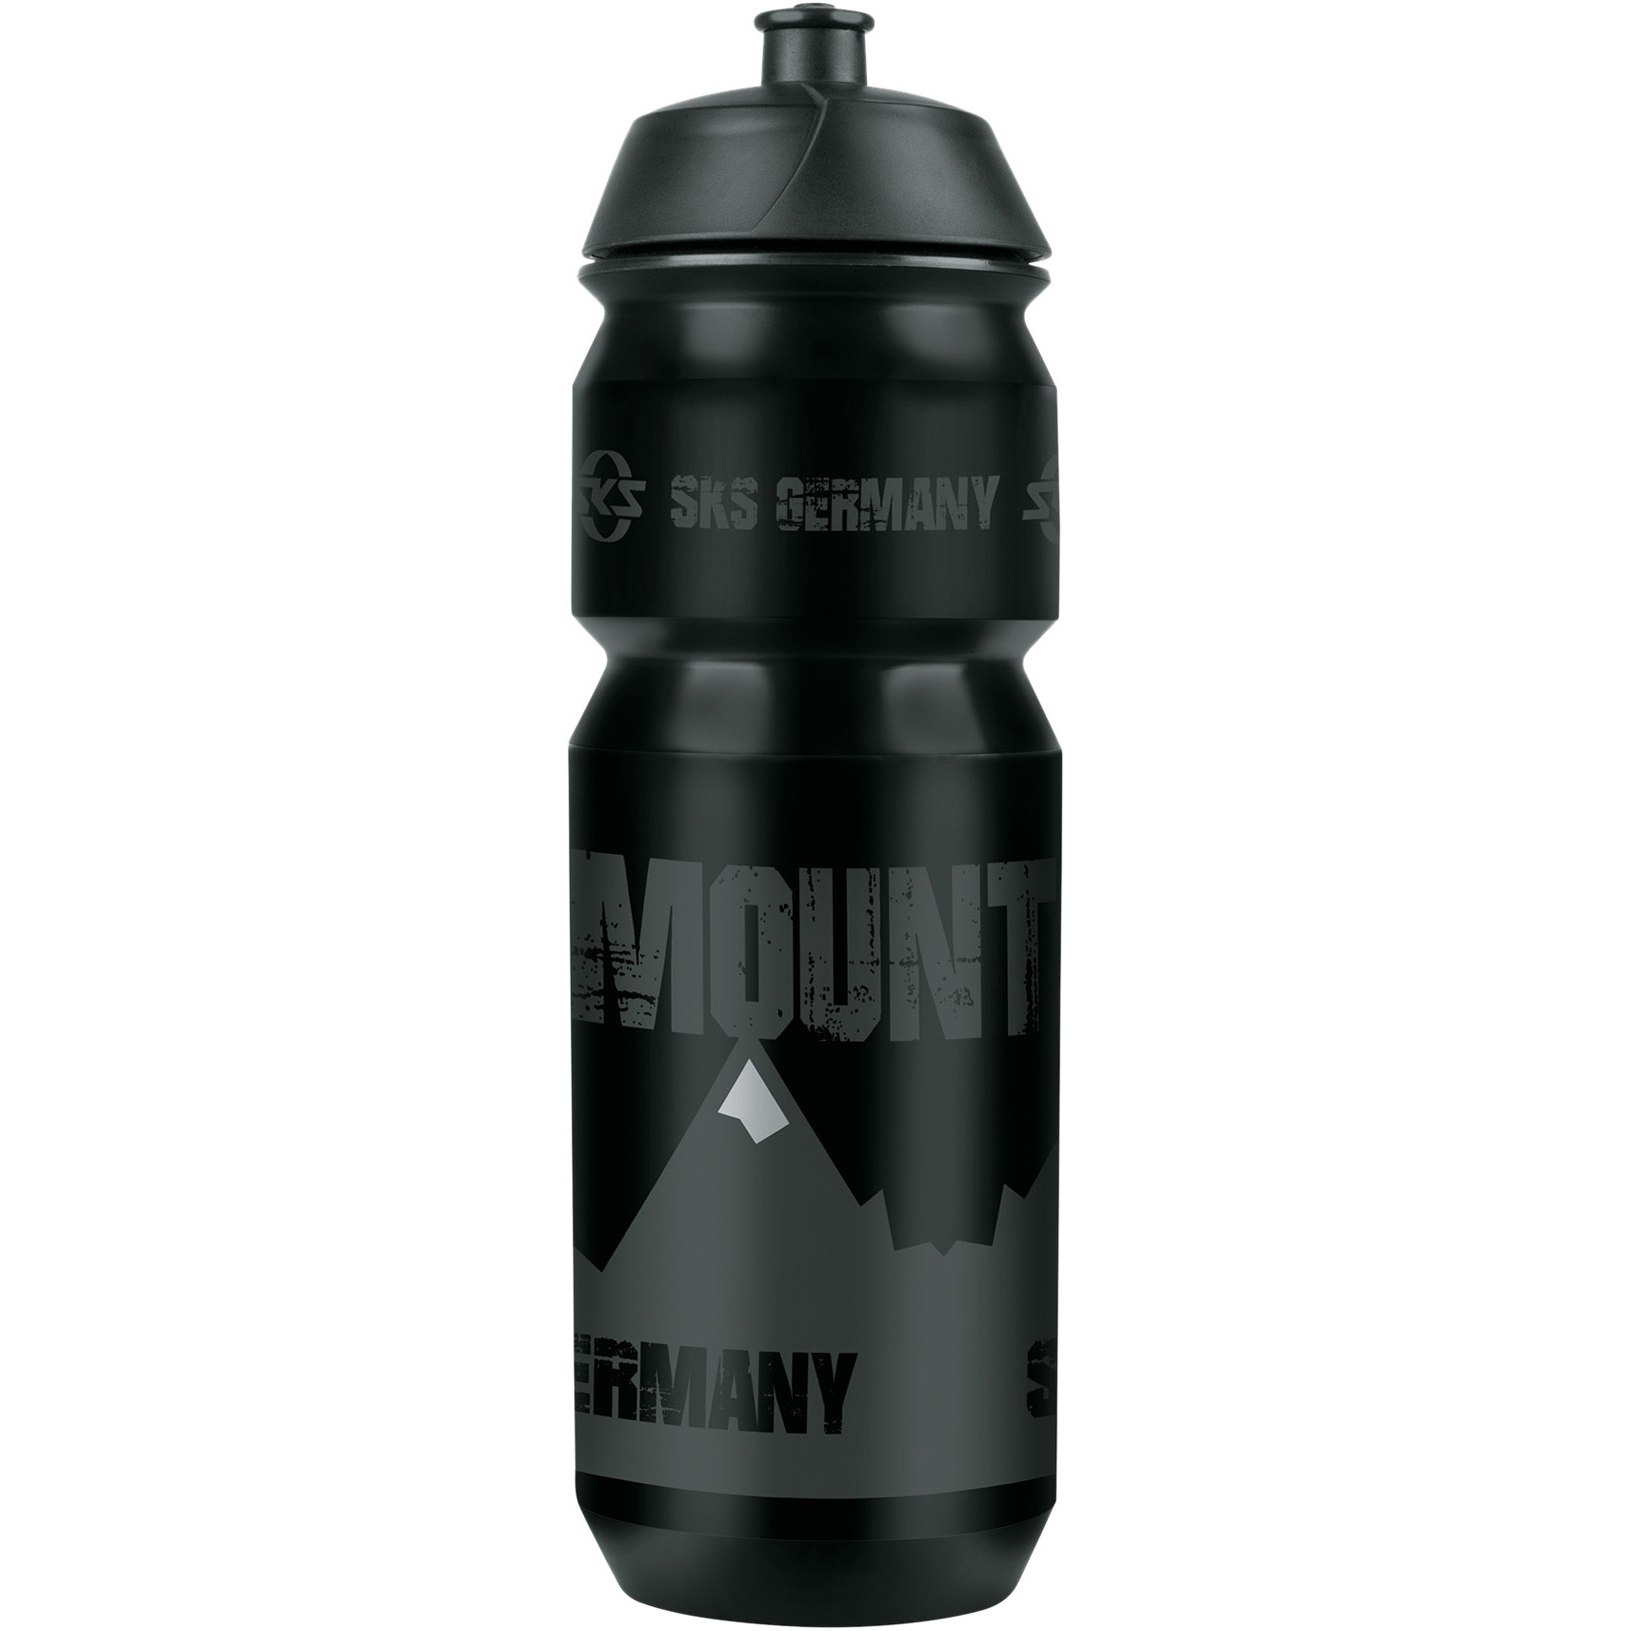 Produktbild von SKS Mountain Black Trinkflasche - Large 750ml